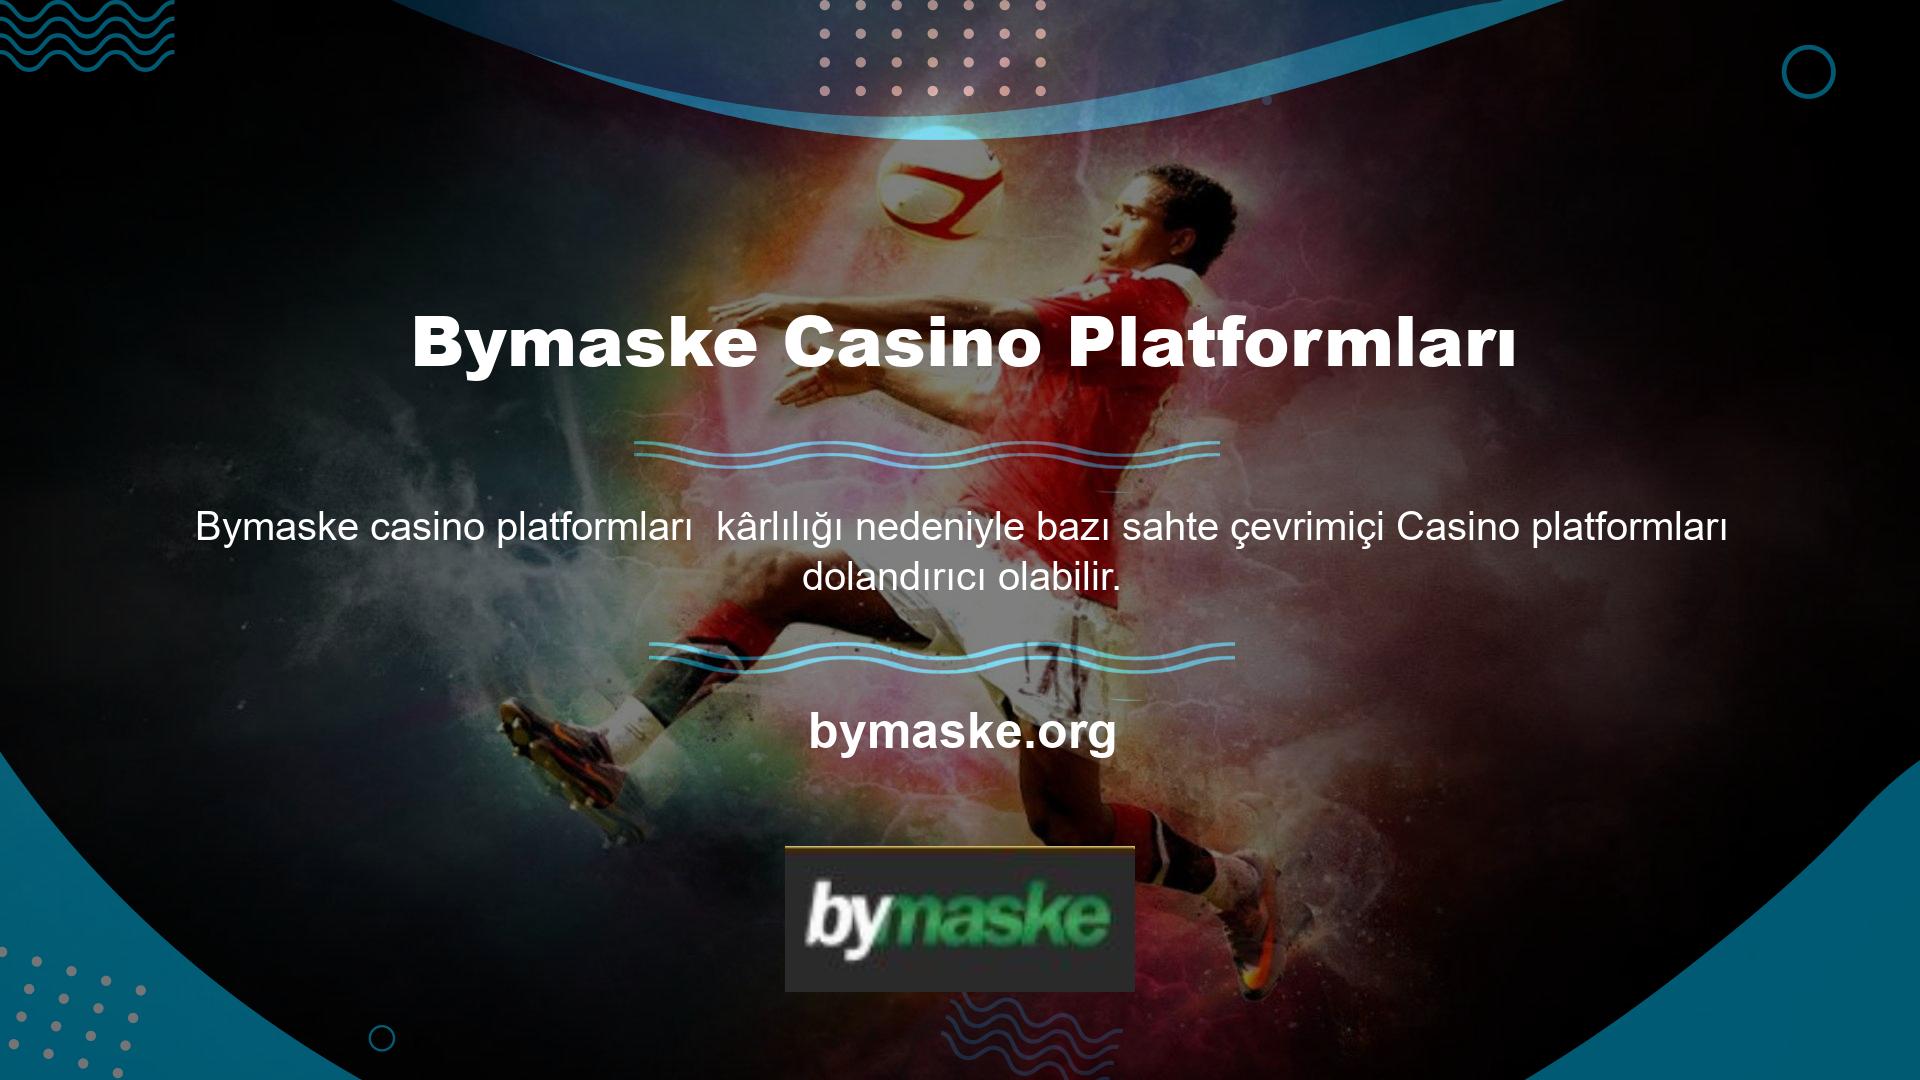 Bu nedenle, çevrimiçi blackjack oynamak için güvenilir ve emniyetli bir platforma sahip olmak çok önemlidir